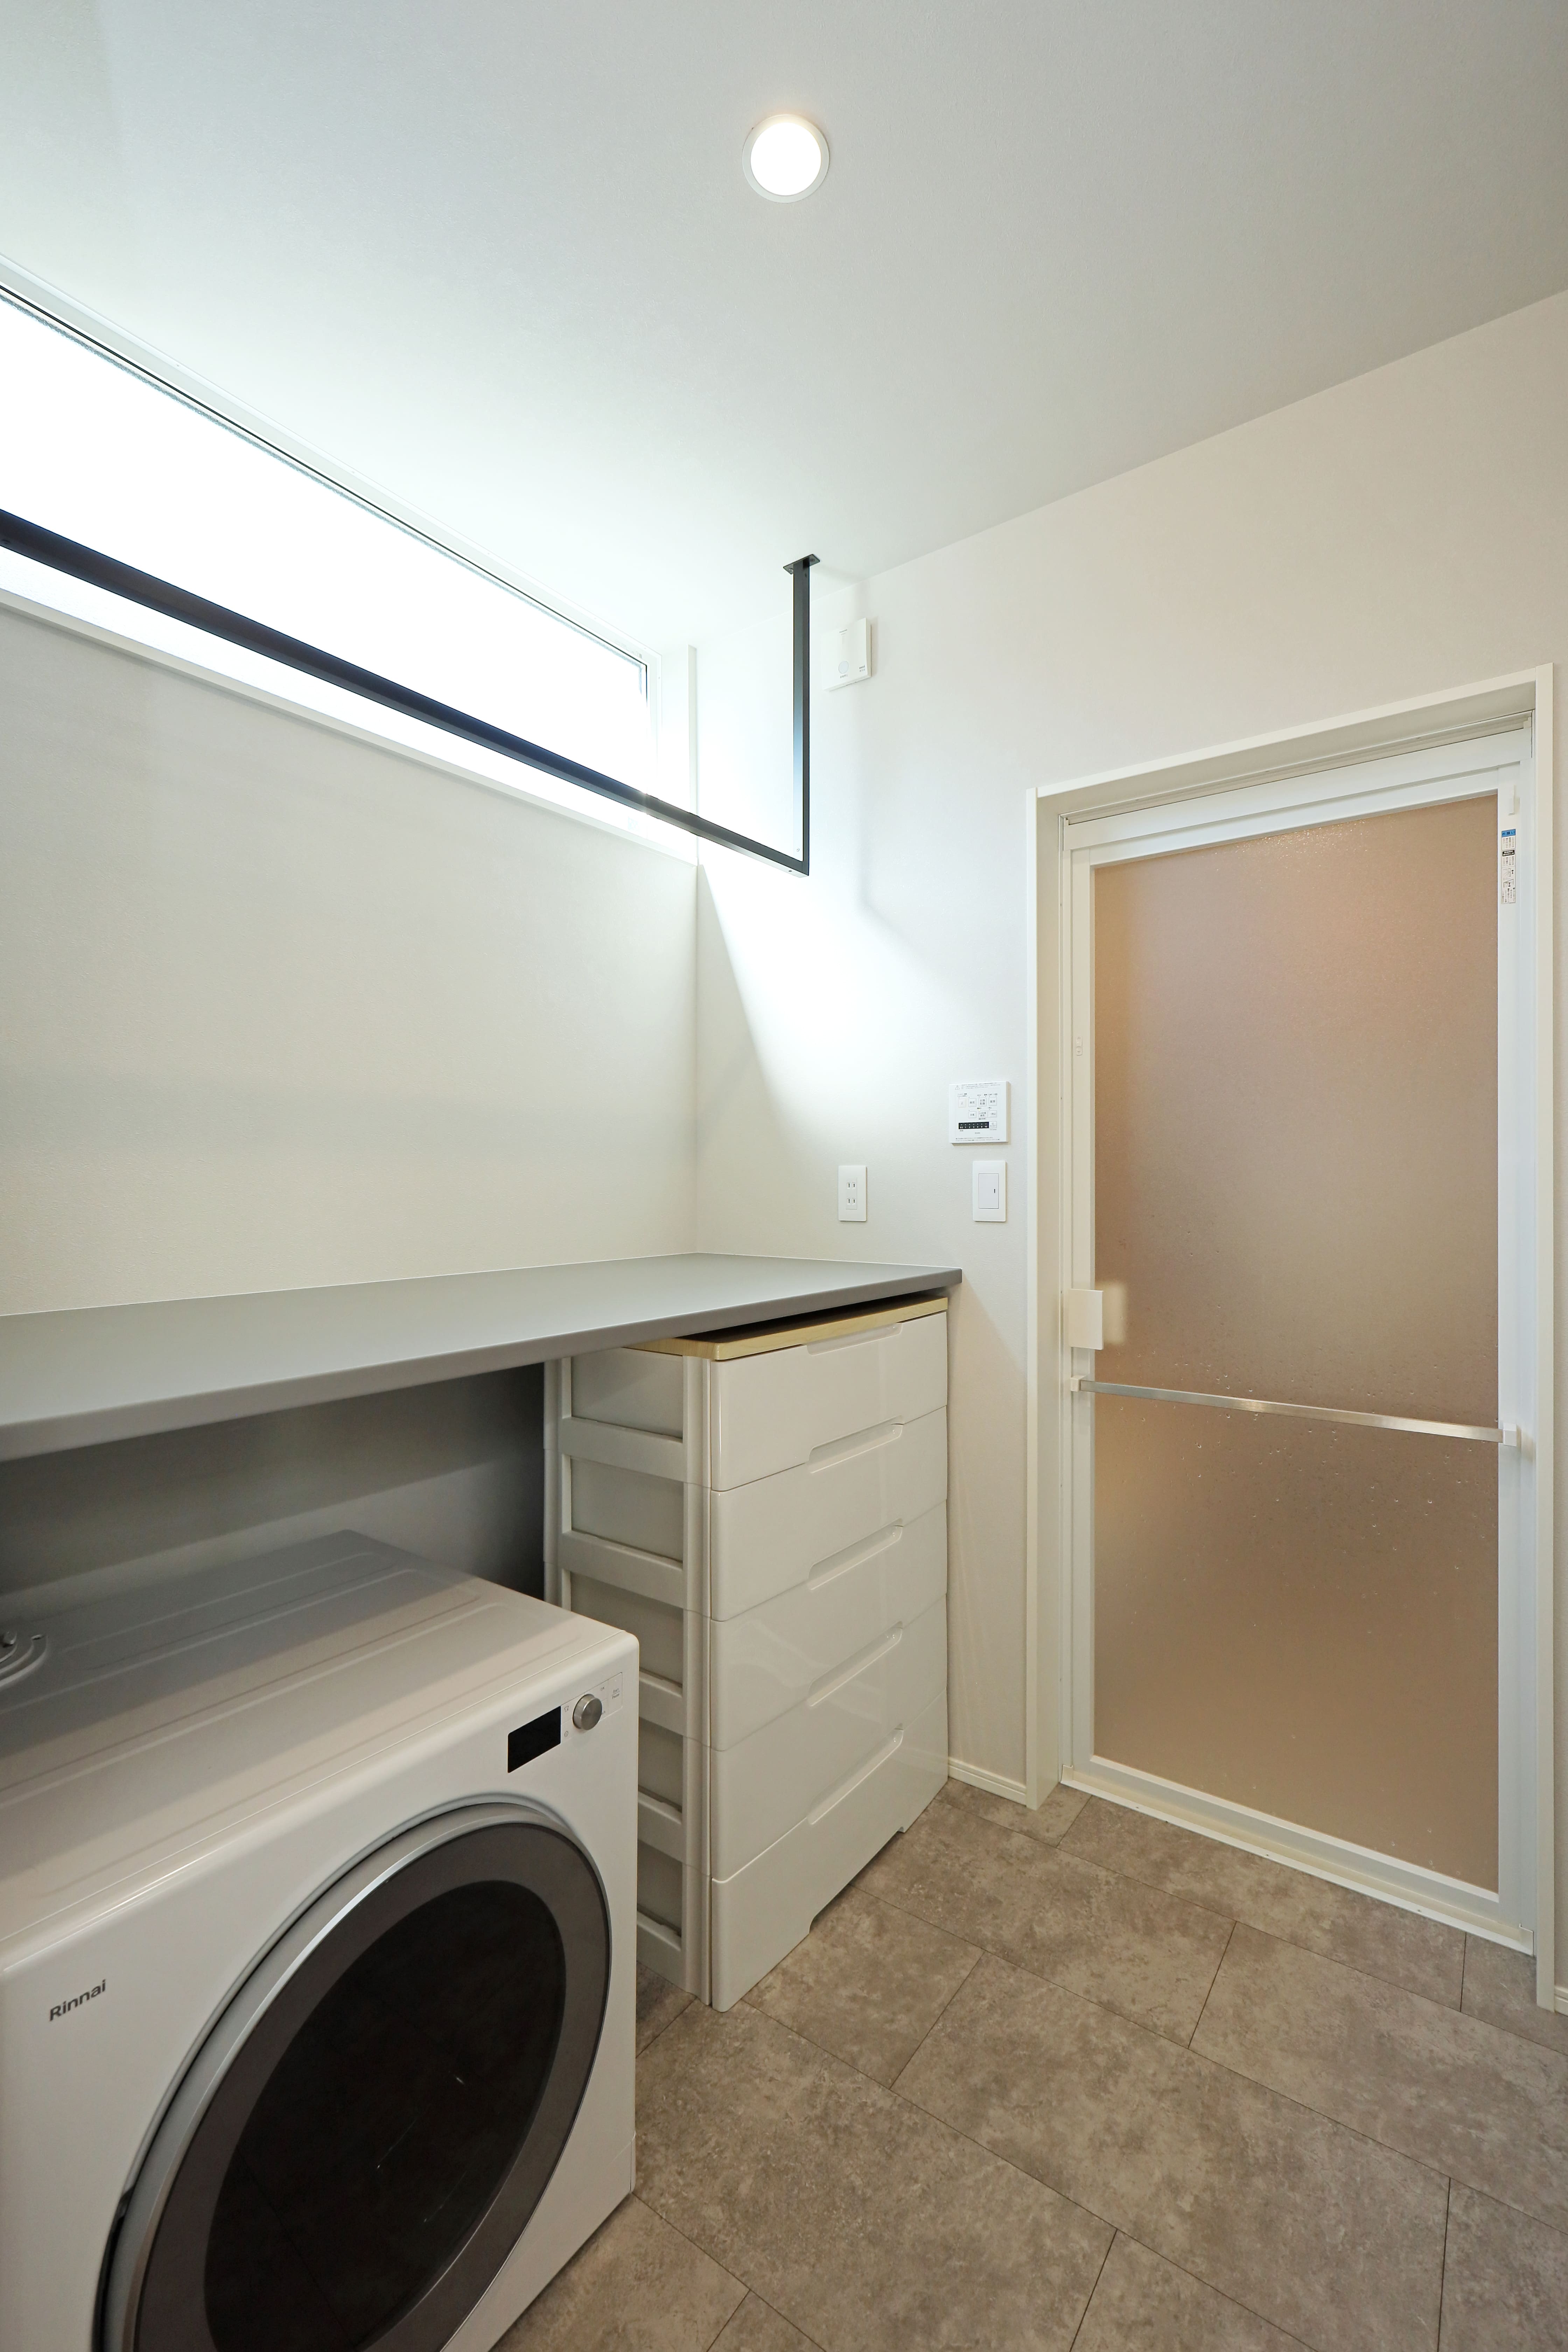 乾燥機からだした洗濯物すぐをたためるだけでなく、アイロン台としても活用できる家事スペース。家事動線が短くて便利！